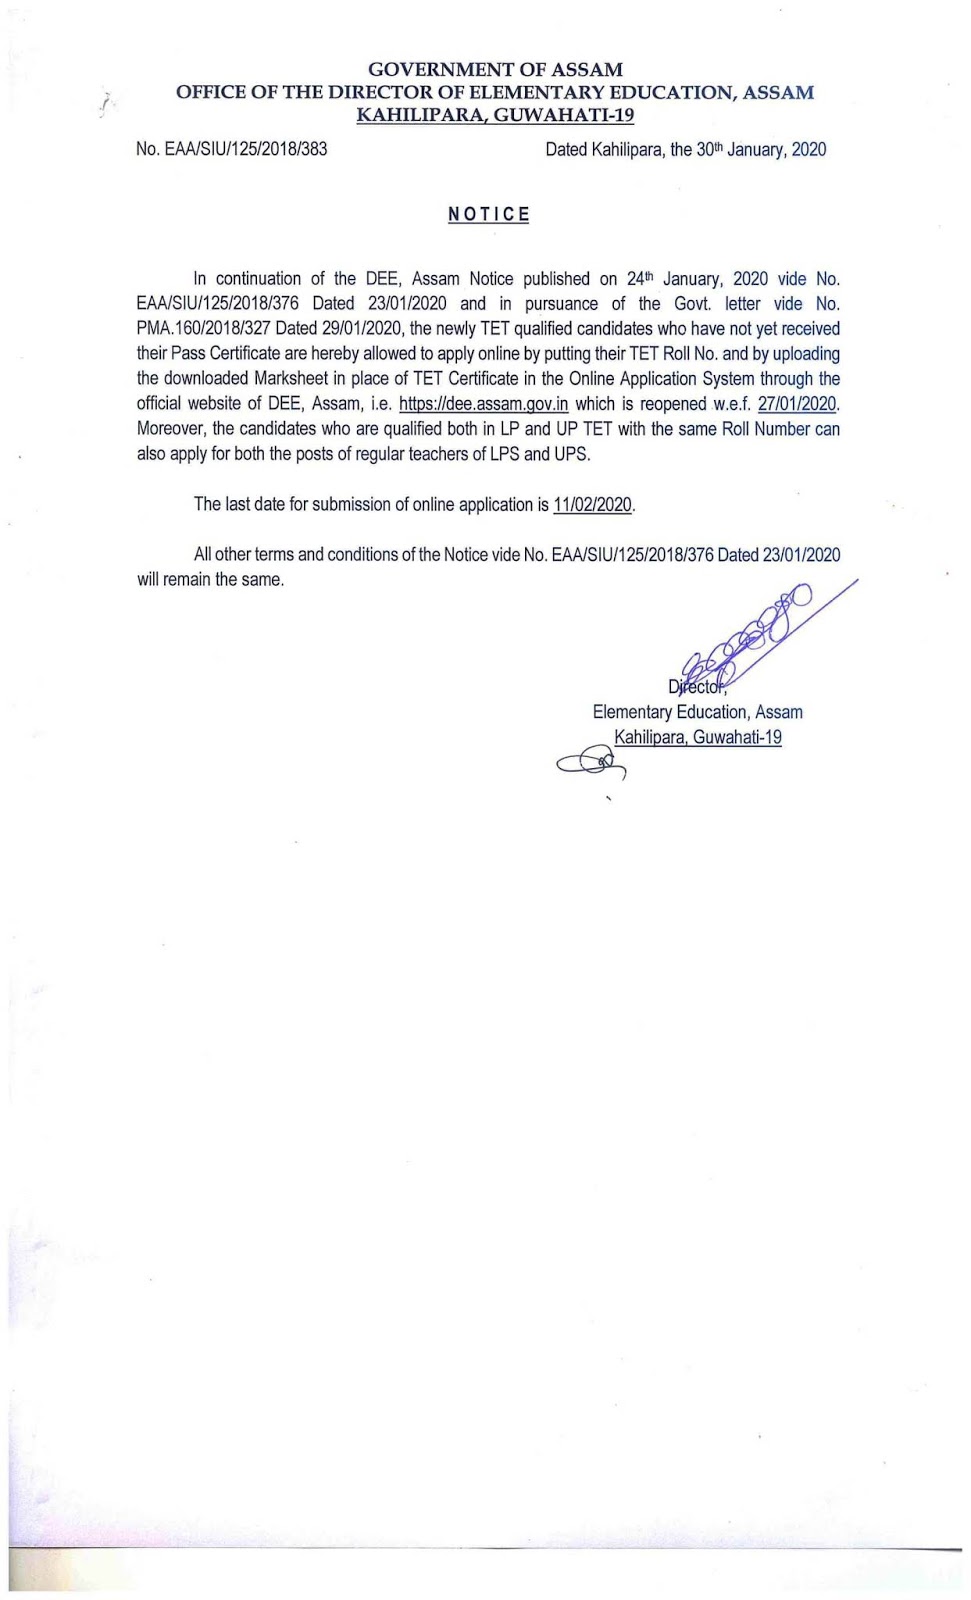 Assam TET Certificate Regarding Notification